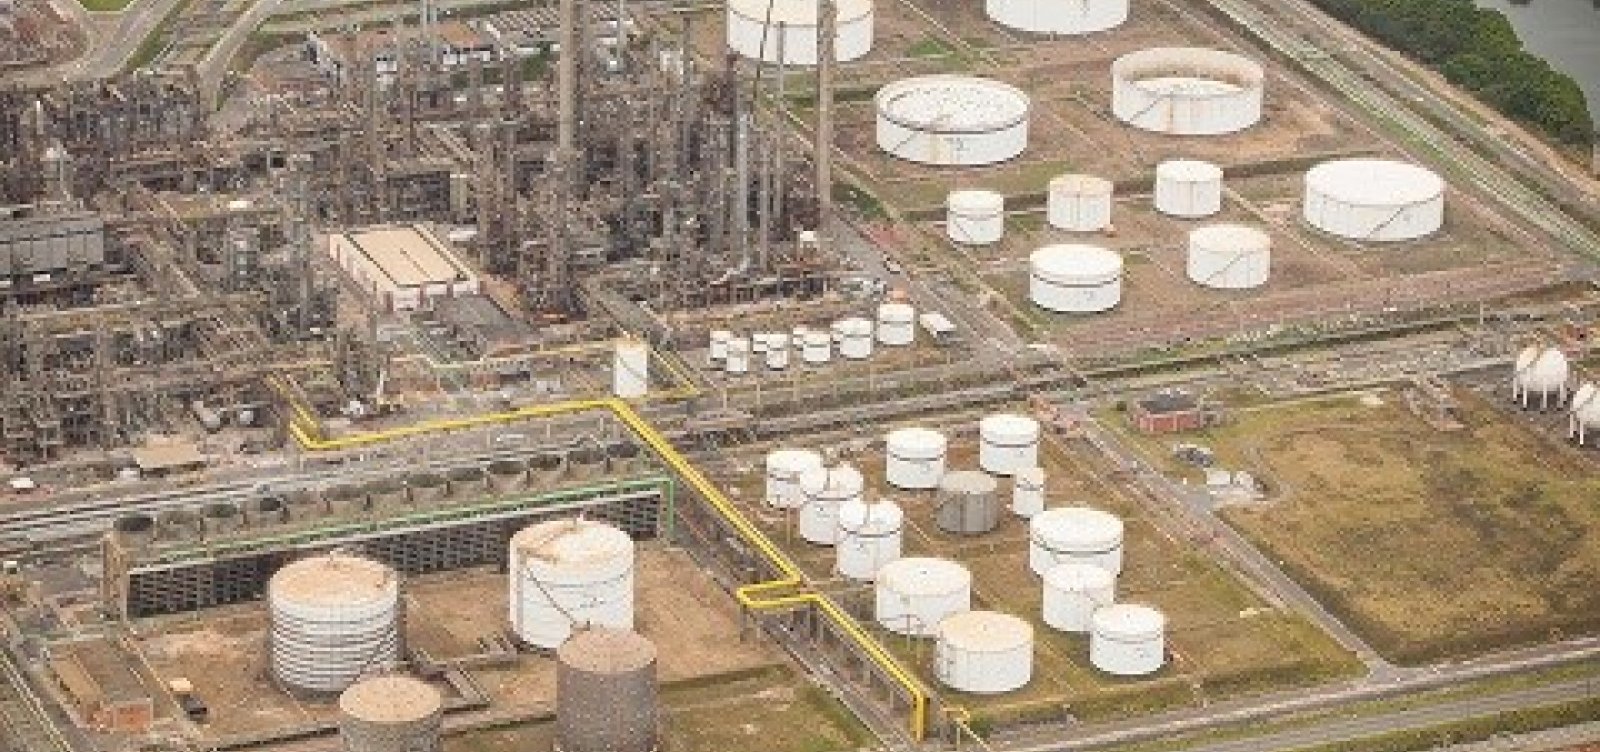 Petrobras anuncia venda de termelétricas em Camaçari por R$ 95 milhões